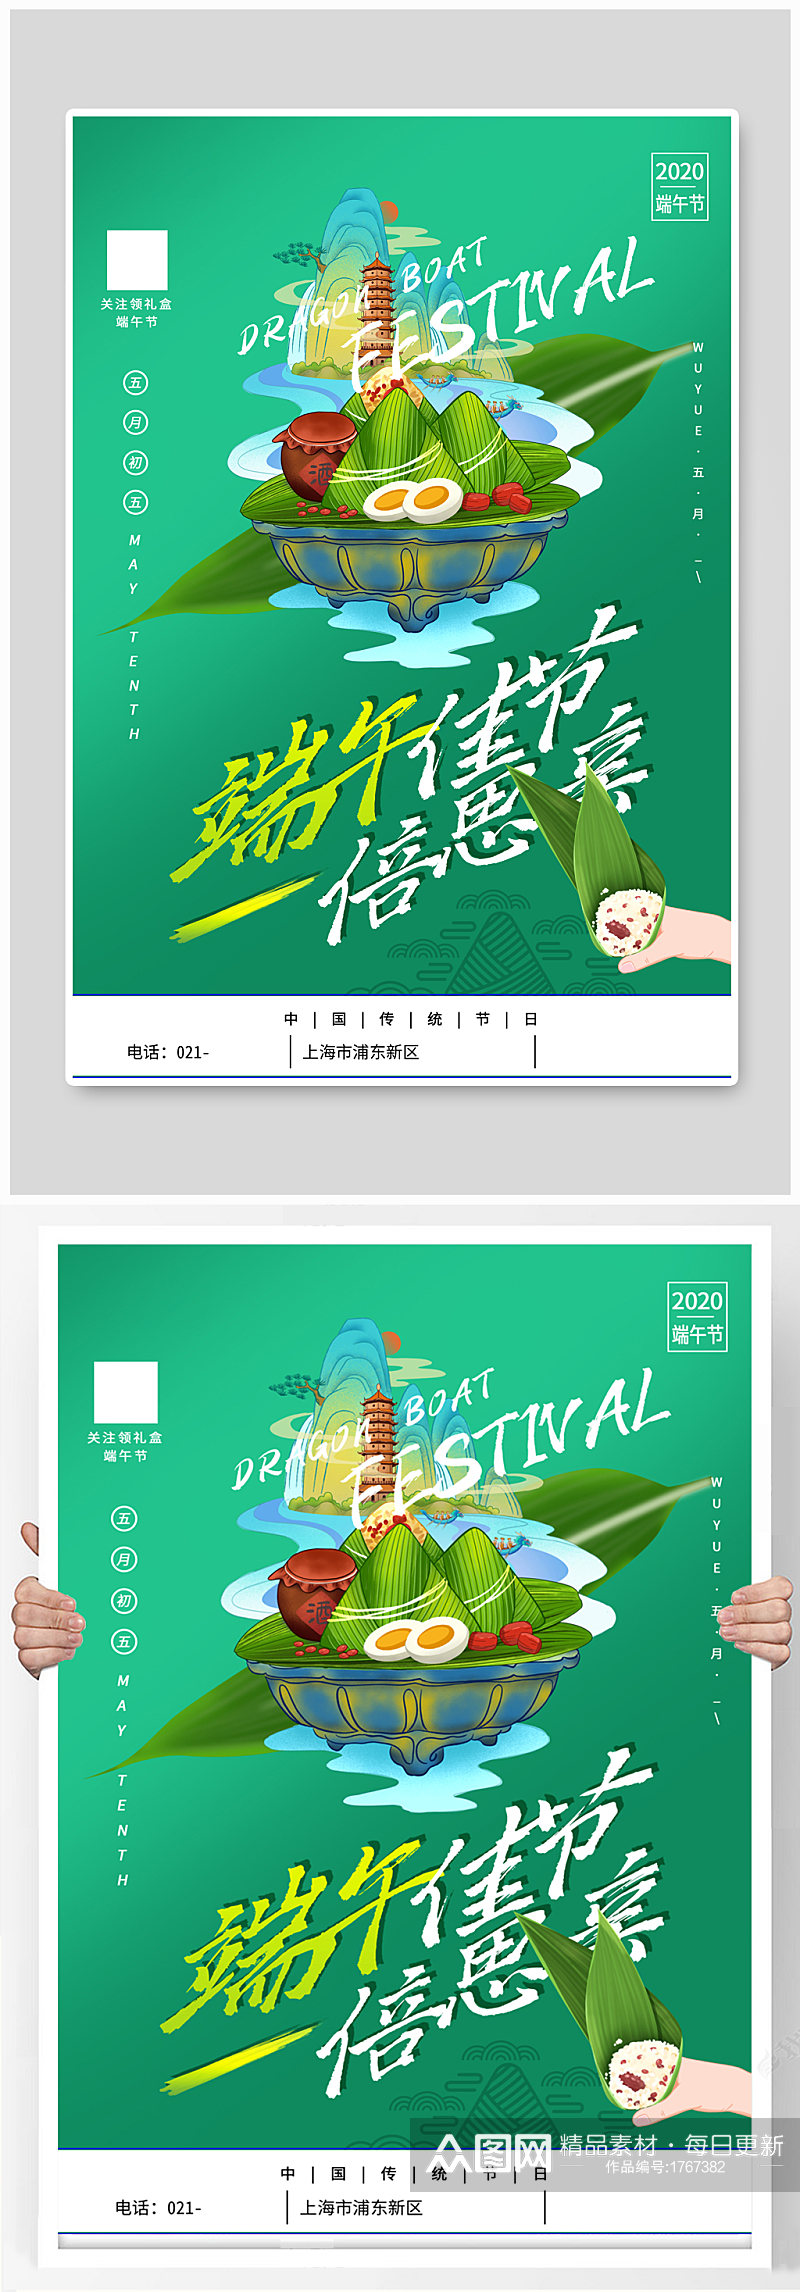 端午节粽子海报设计素材